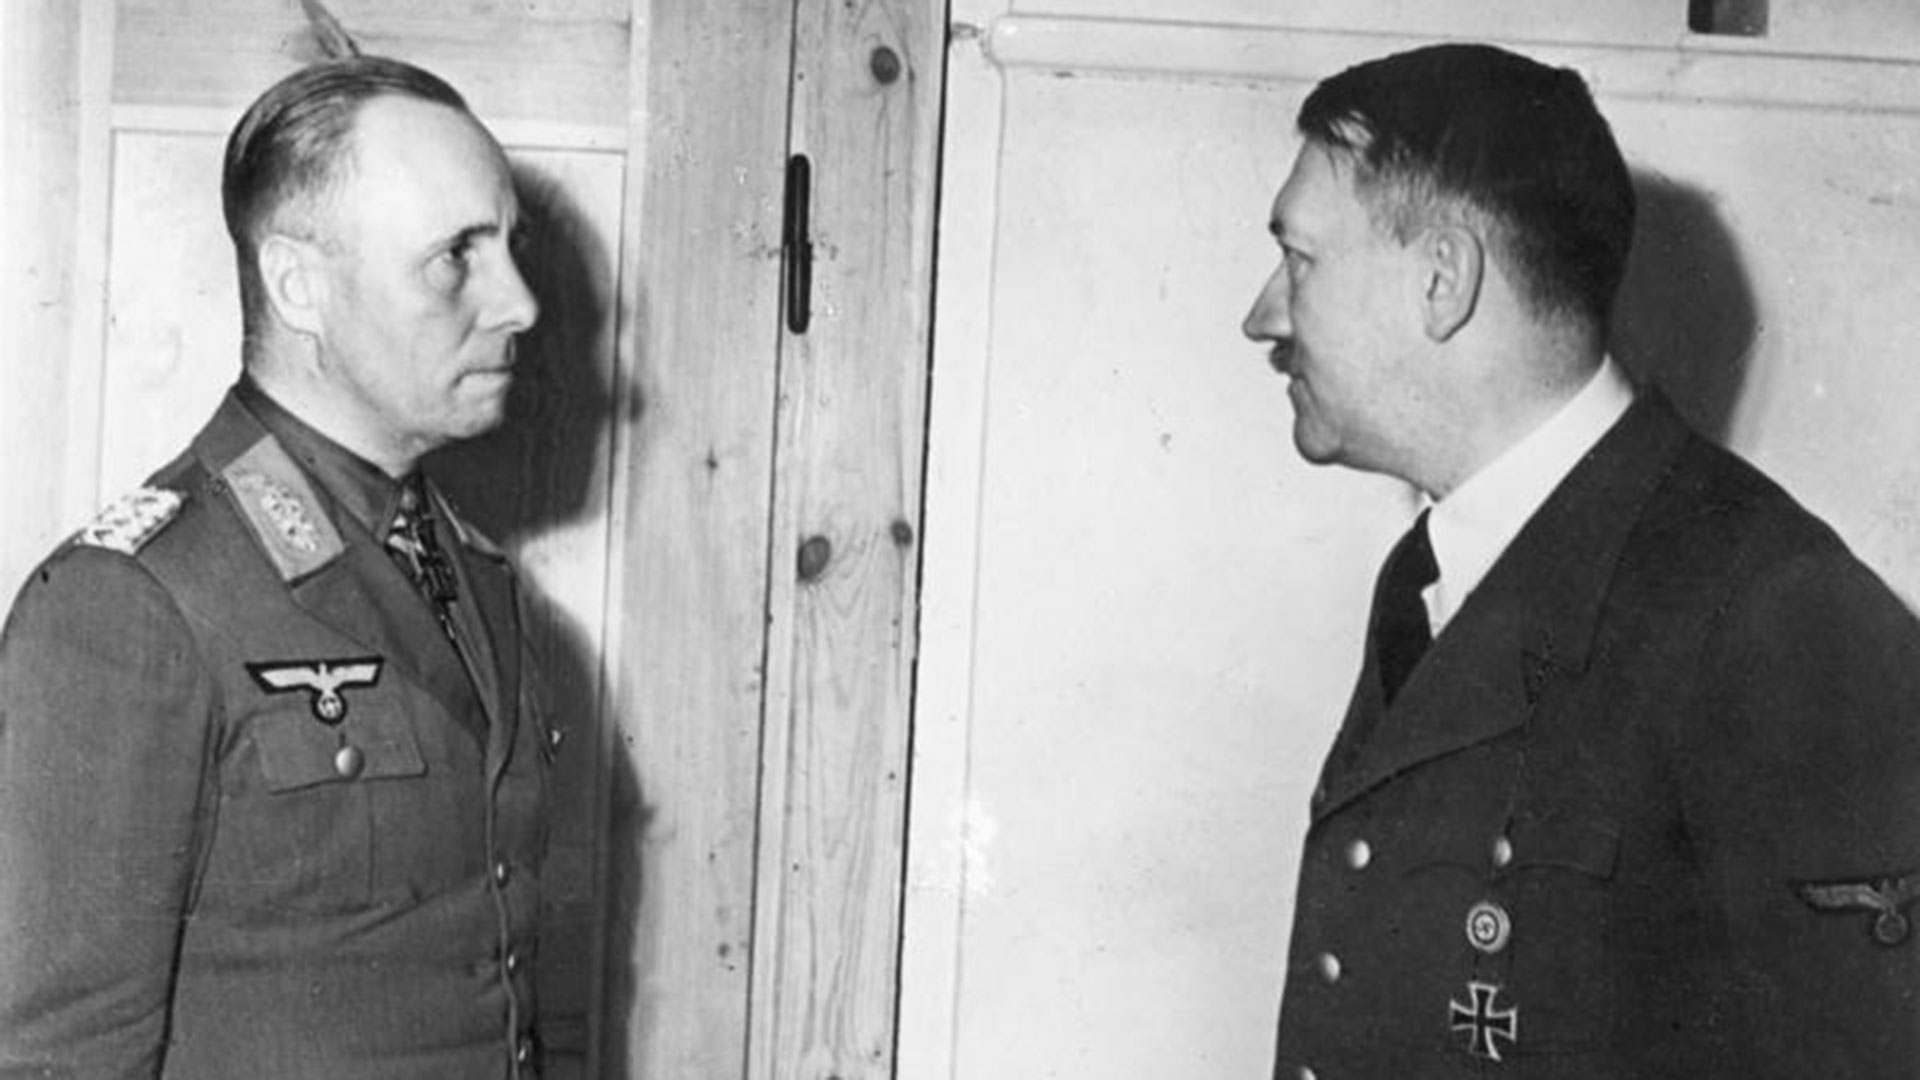 Hitler le ordenó a Rommel que lo fuera a visitar a Berlín, pero éste se rehusó. Entonces le envió a dos generales, Burgdorf y Maisel, con dos pastillas de cianuro y un ultimátum: o el suicidio, o la ejecución